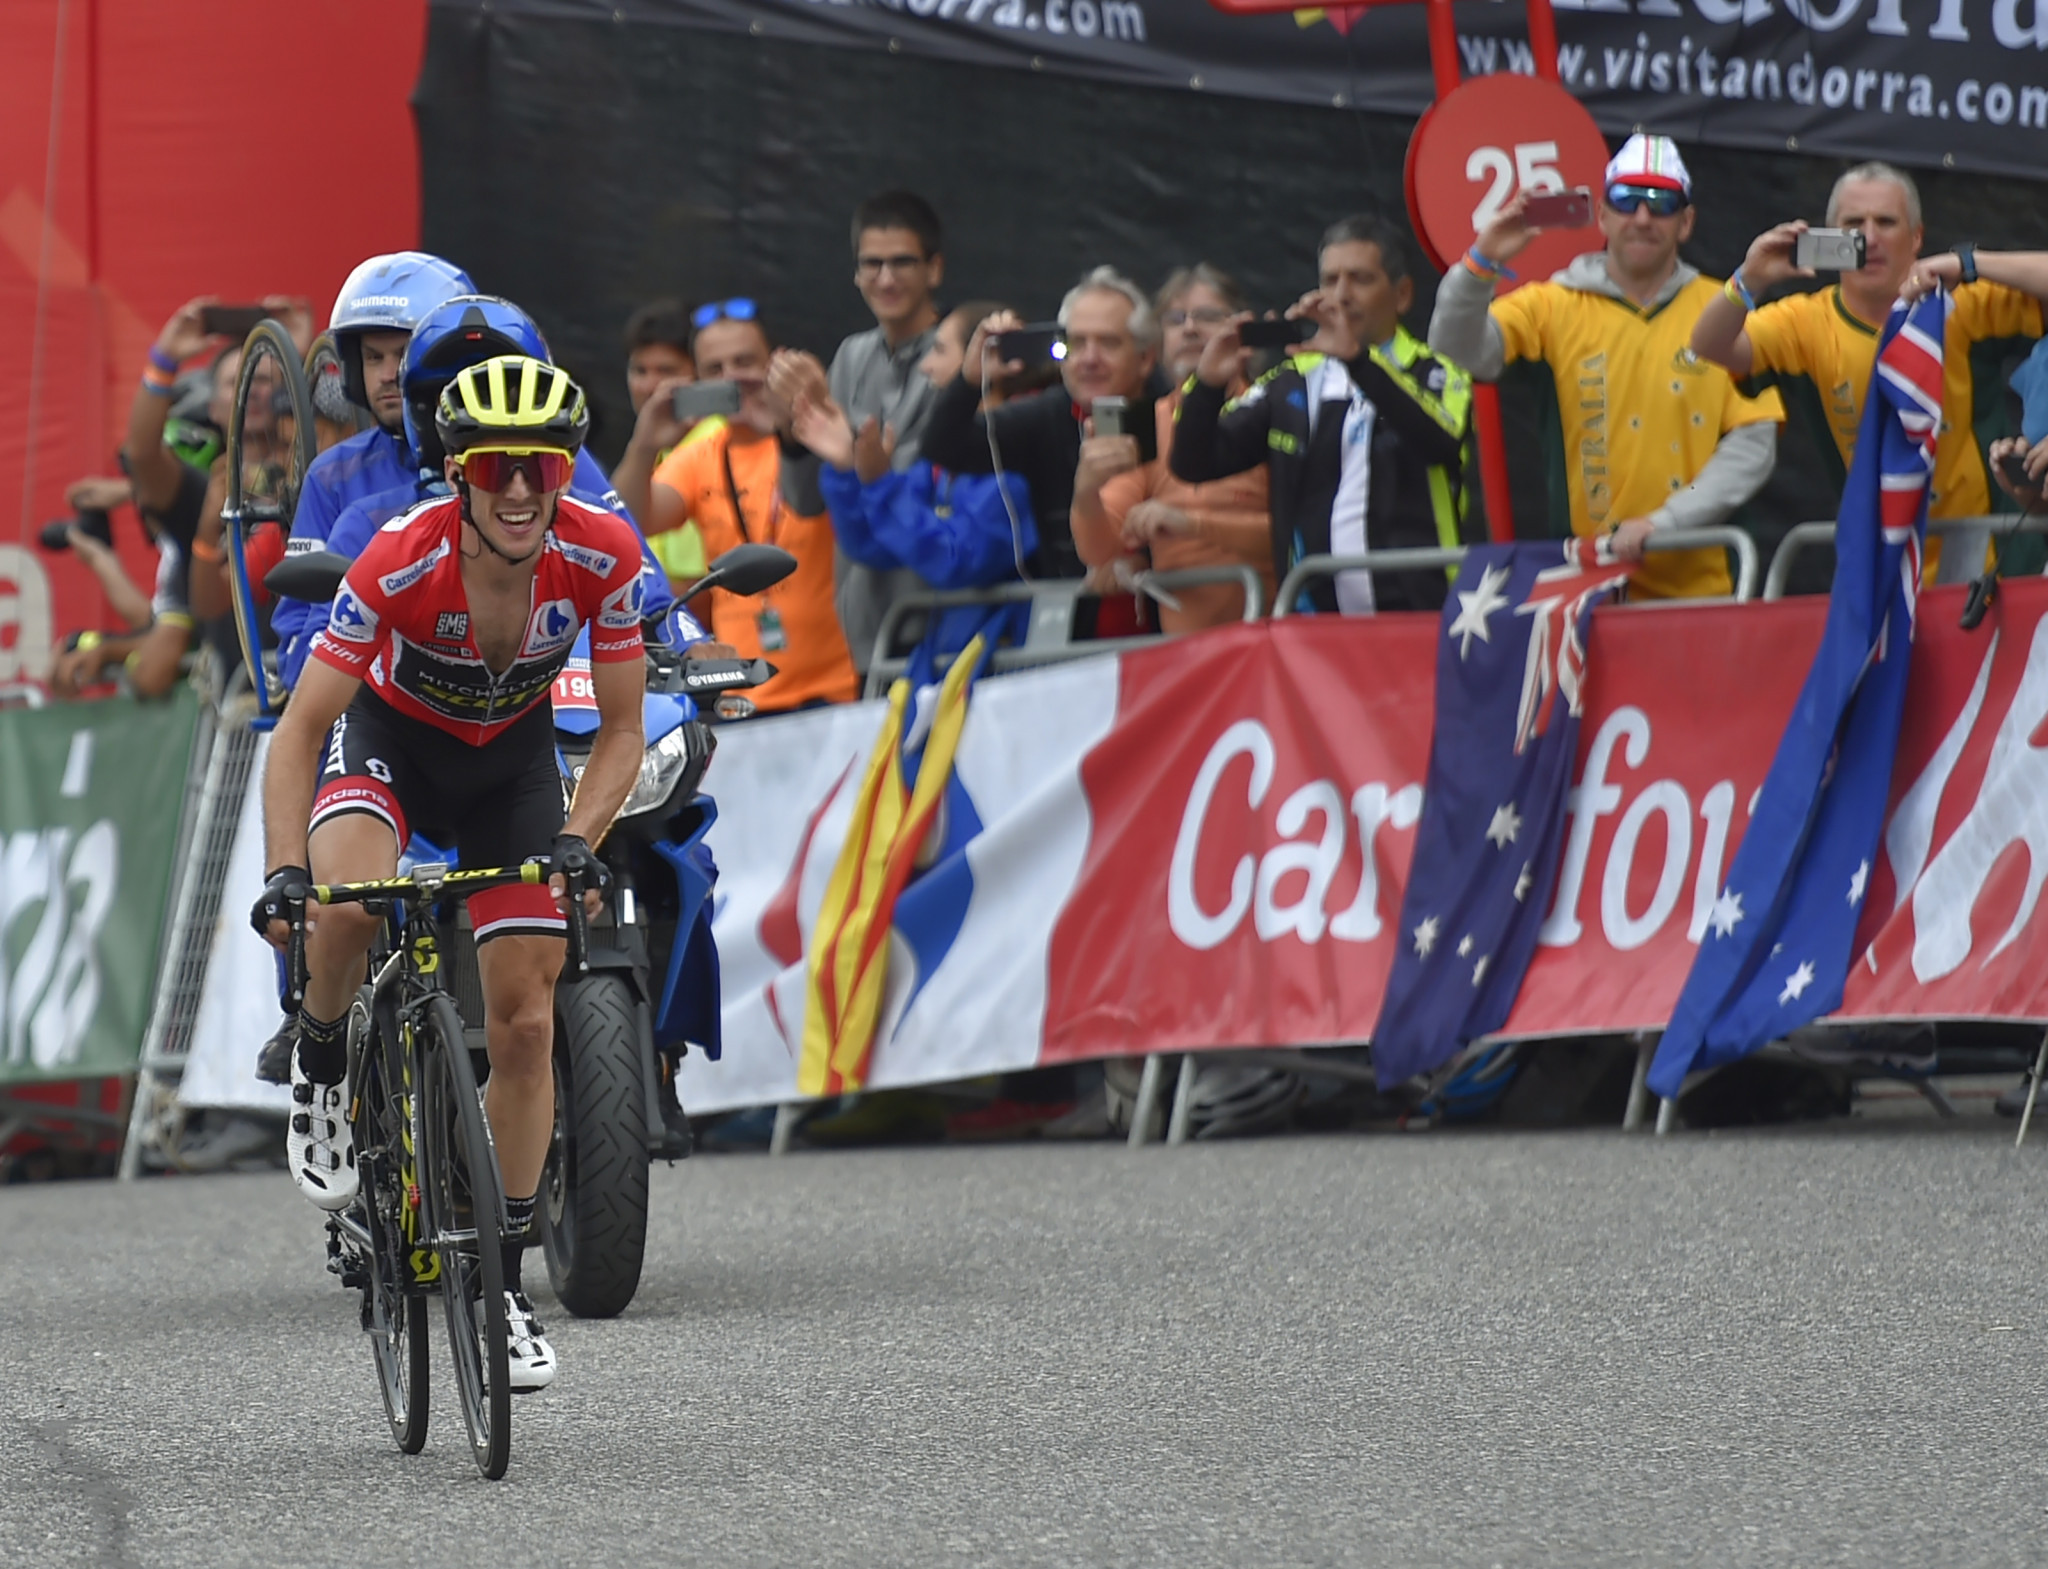 Yates set to clinch first Grand Tour triumph at Vuelta a España